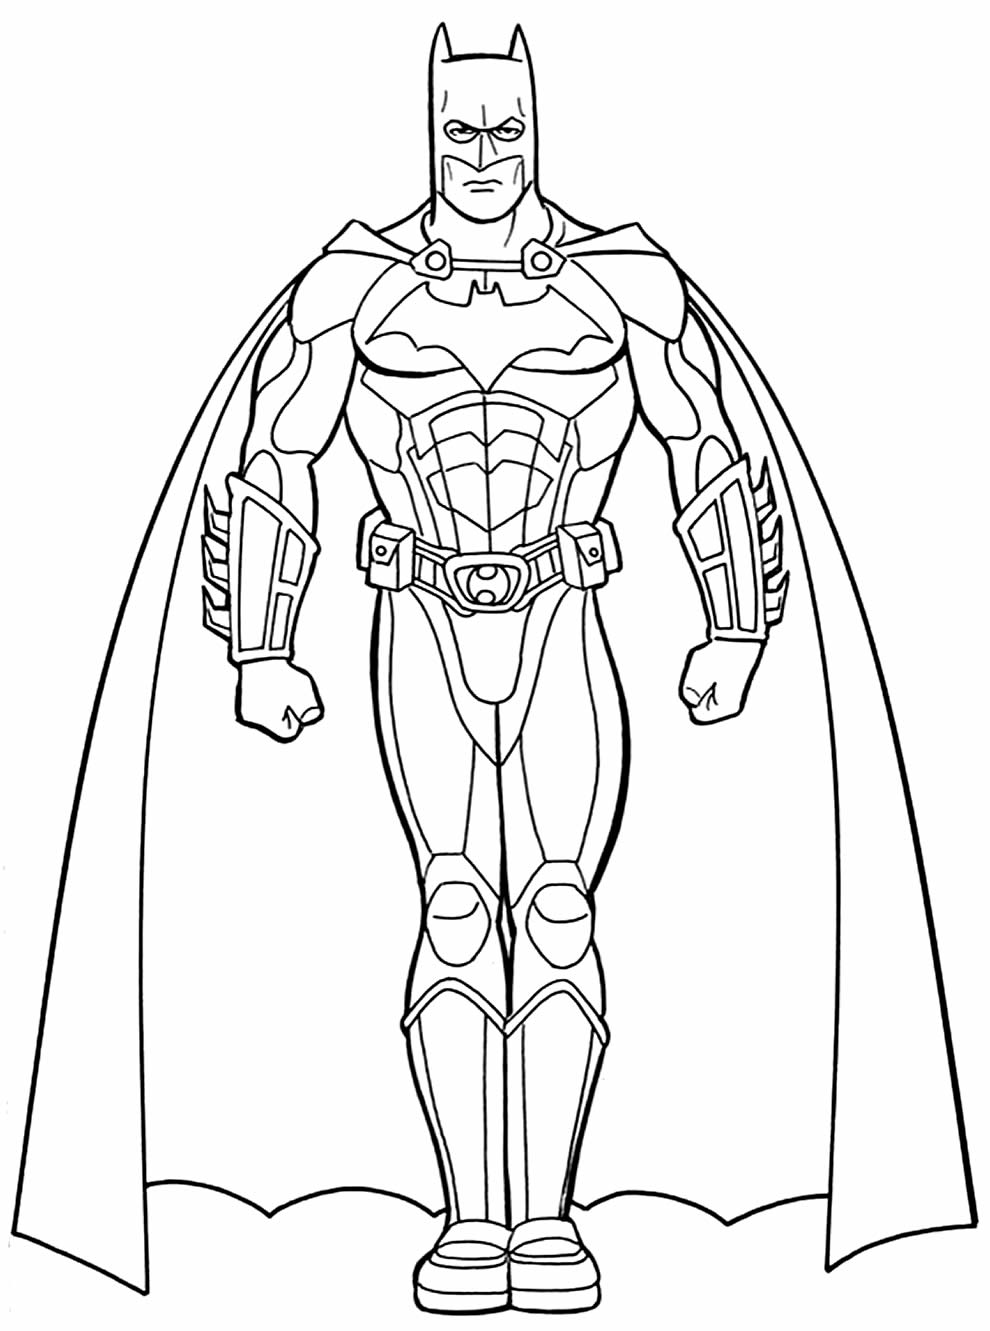 Desenho do Batman para colorir